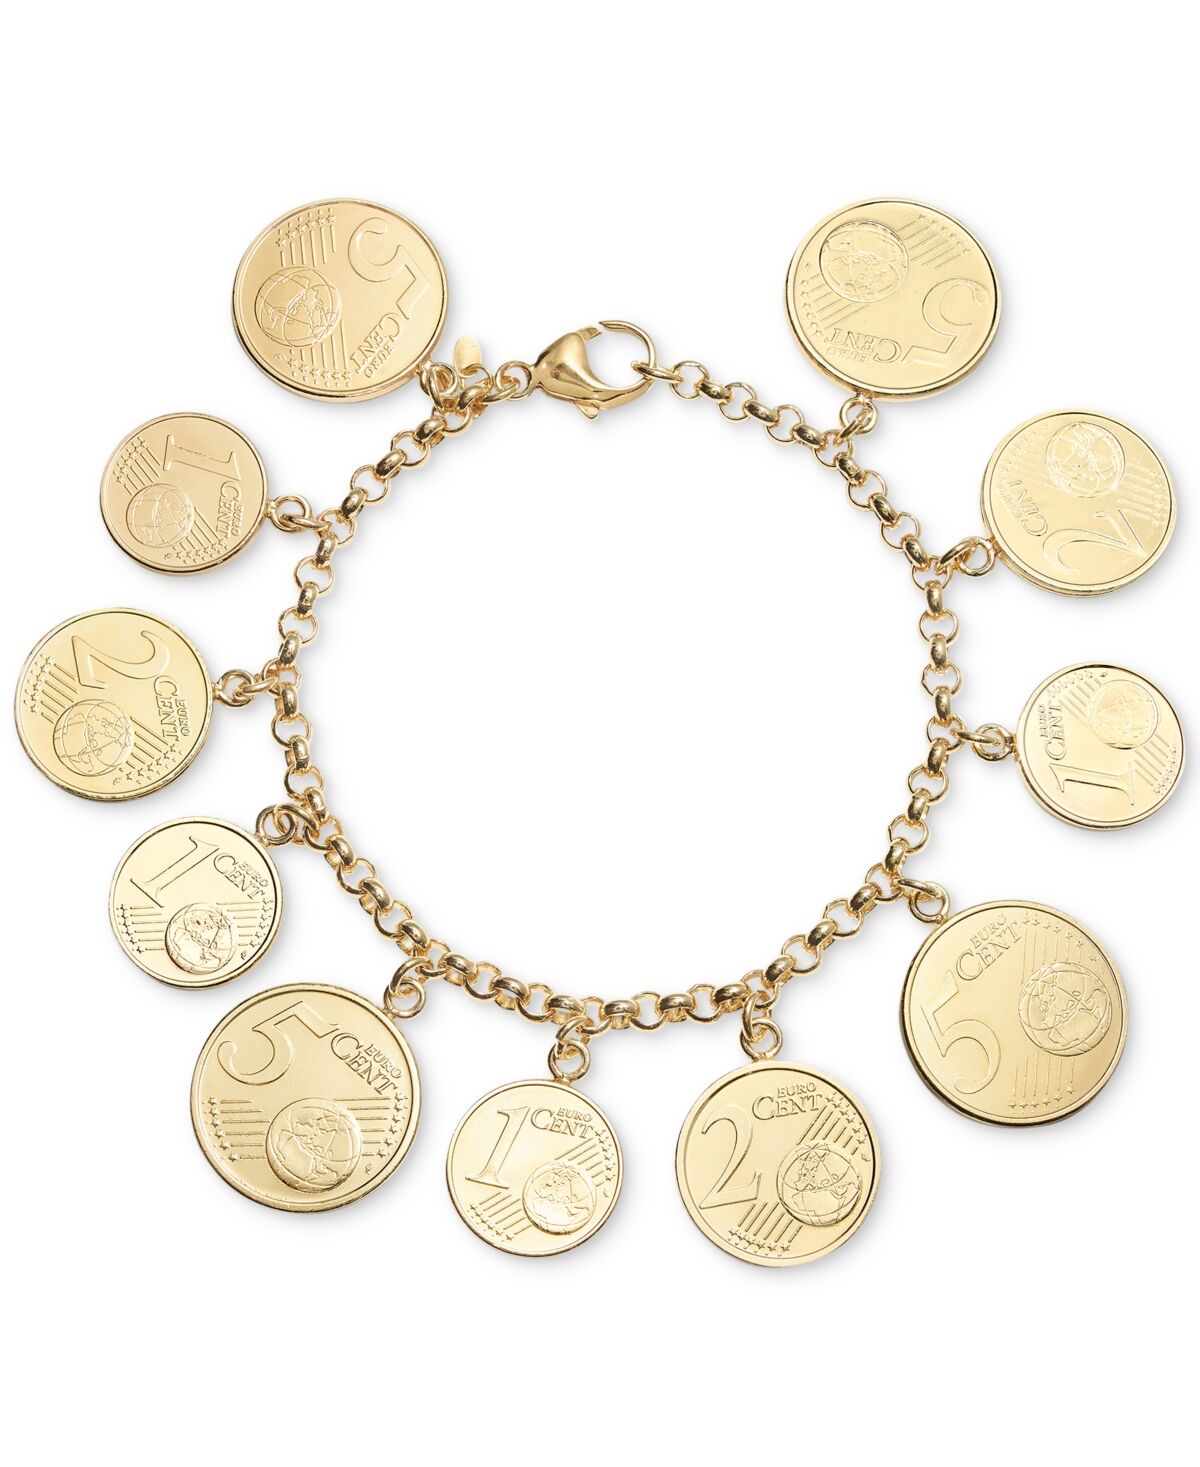 Italian Gold Euro Coin Charm Bracelet in 14k Gold Vermeil